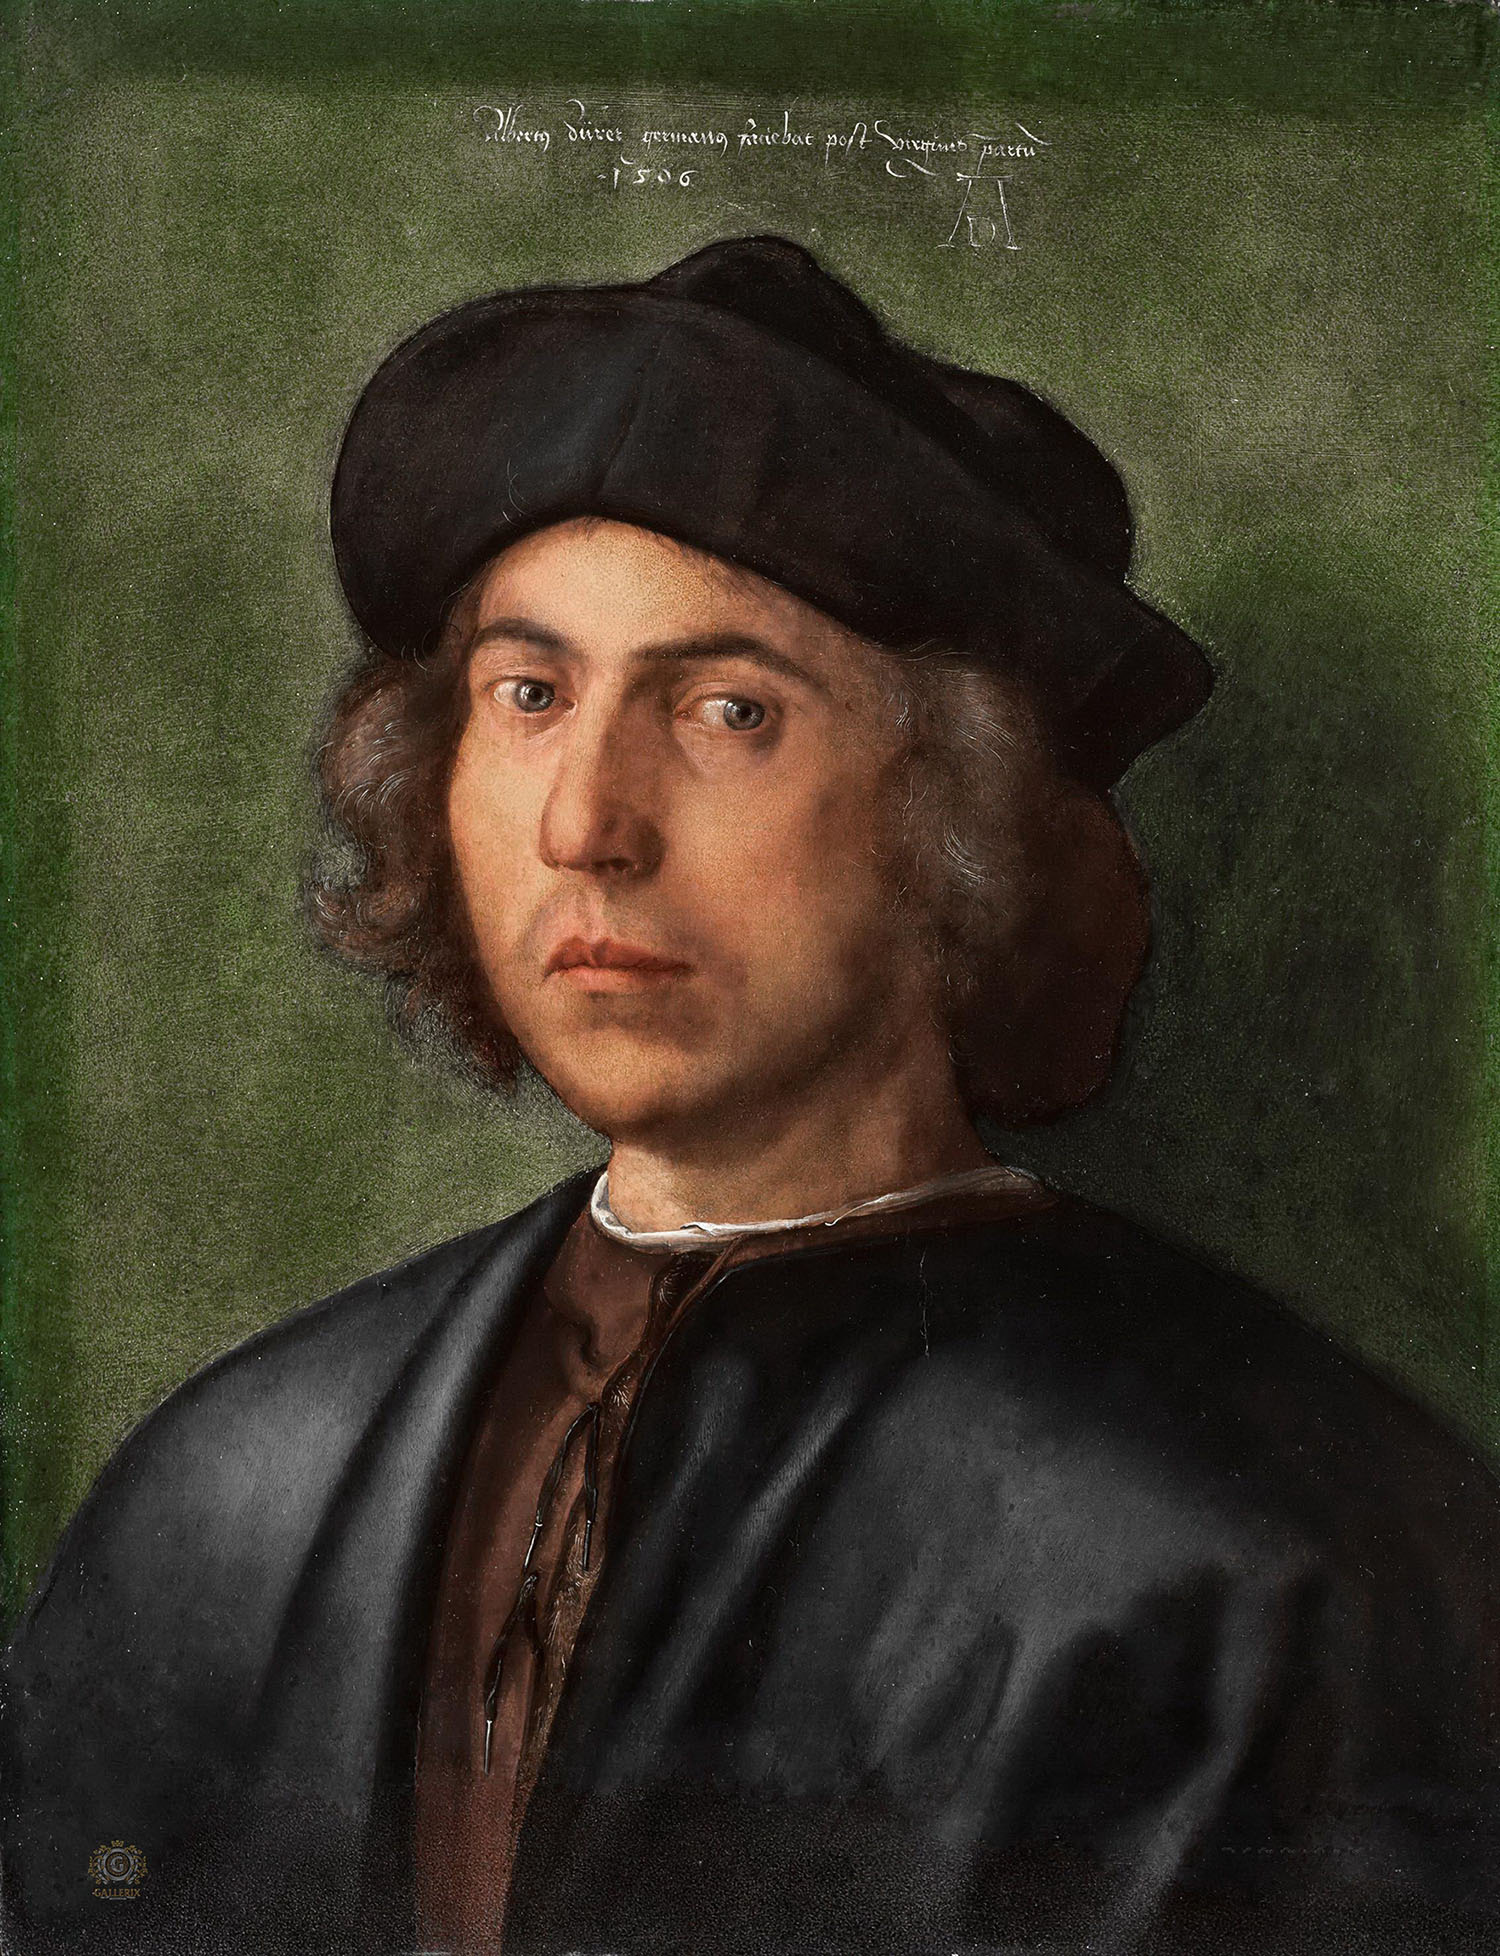 Альбрехт Дюрер. "Портрет молодого человека". 1506. Палаццо Россо, Генуя.